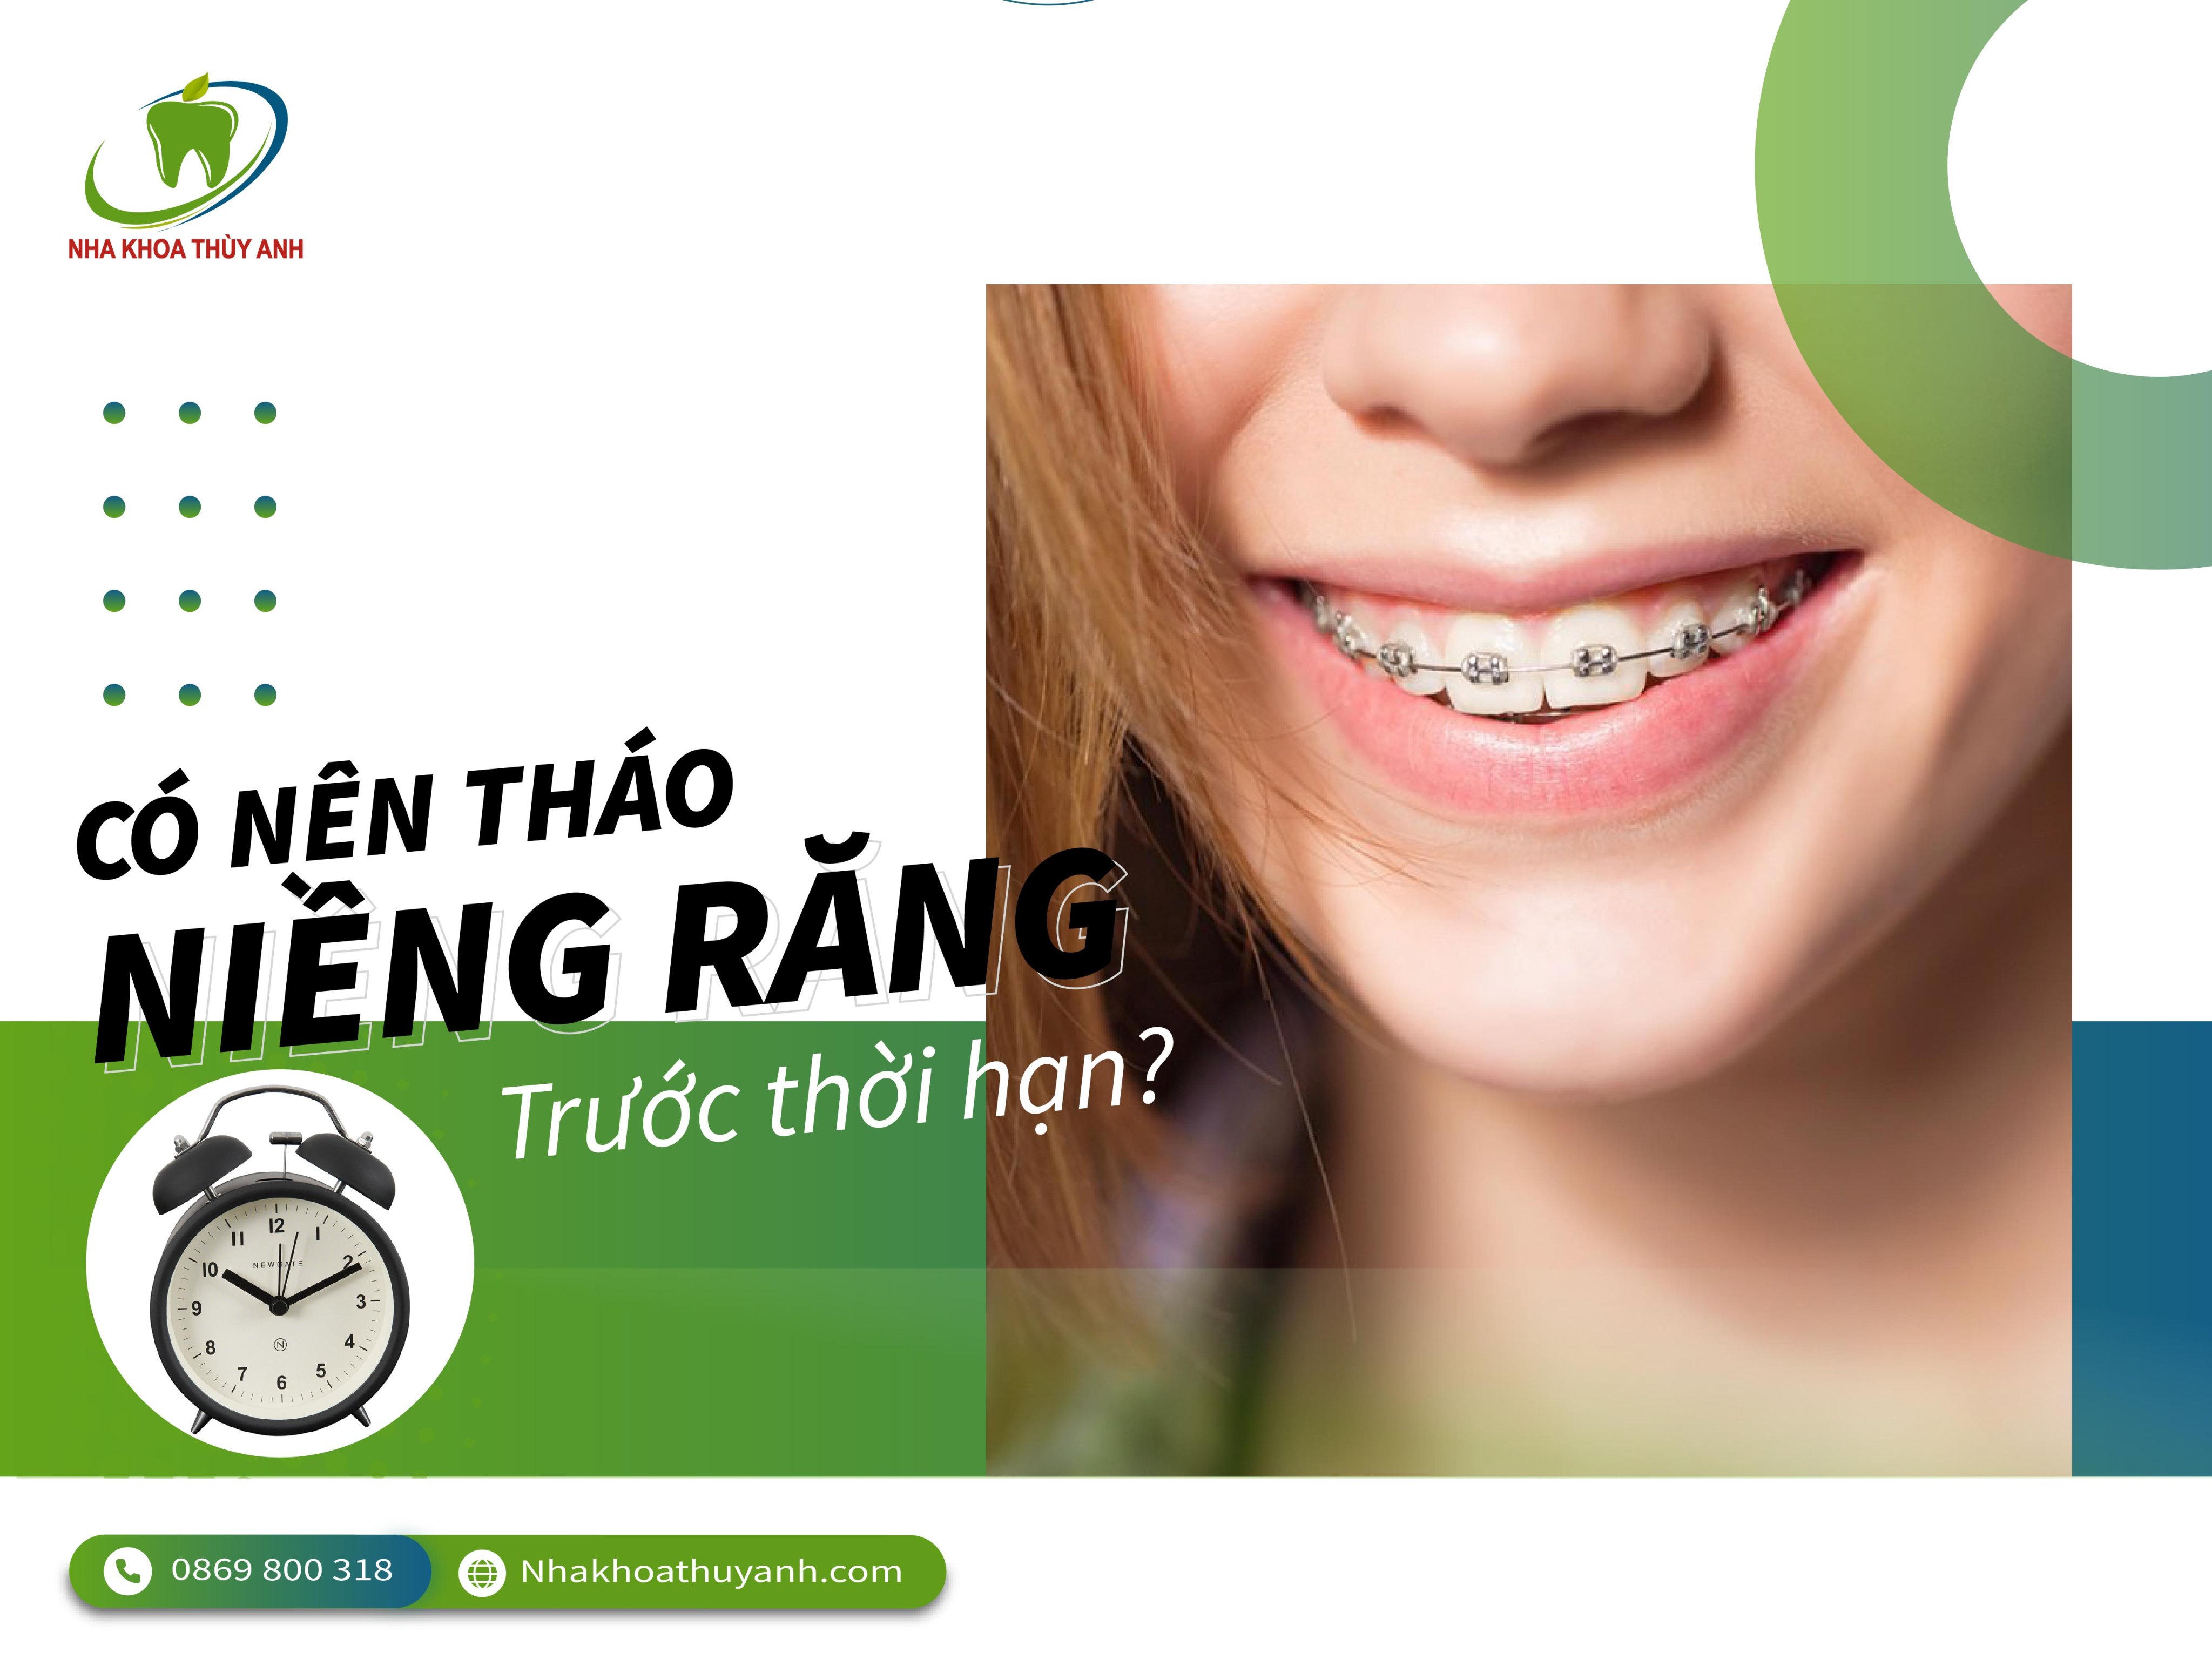 Có nên tháo niềng răng trước thời hạn – niềng răng Thái Nguyên?